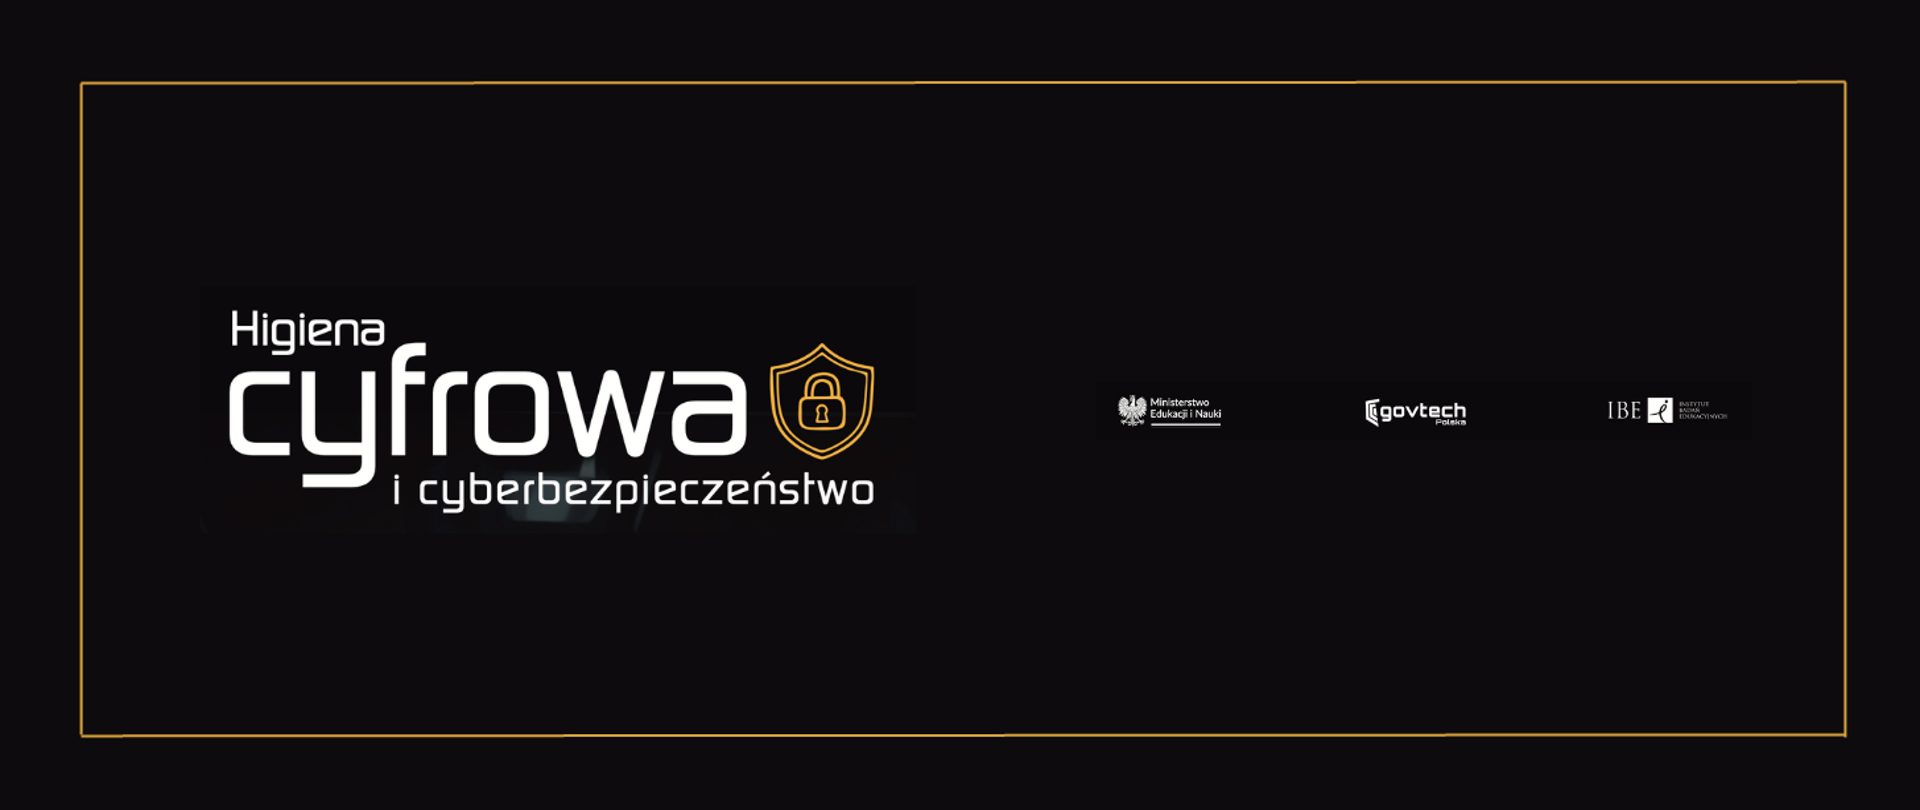 Po lewej napis: Higiena cyfrowa i cyberbezpieczeństwo
Obok napisu ikona kłódki na tarczy symbolizująca cyberbezpieczeństwo.
Po prawej logotypy: Ministerstwo Edukacji i Nauki, GovTech Polska, IBE Instytut Badań Edukacyjnych